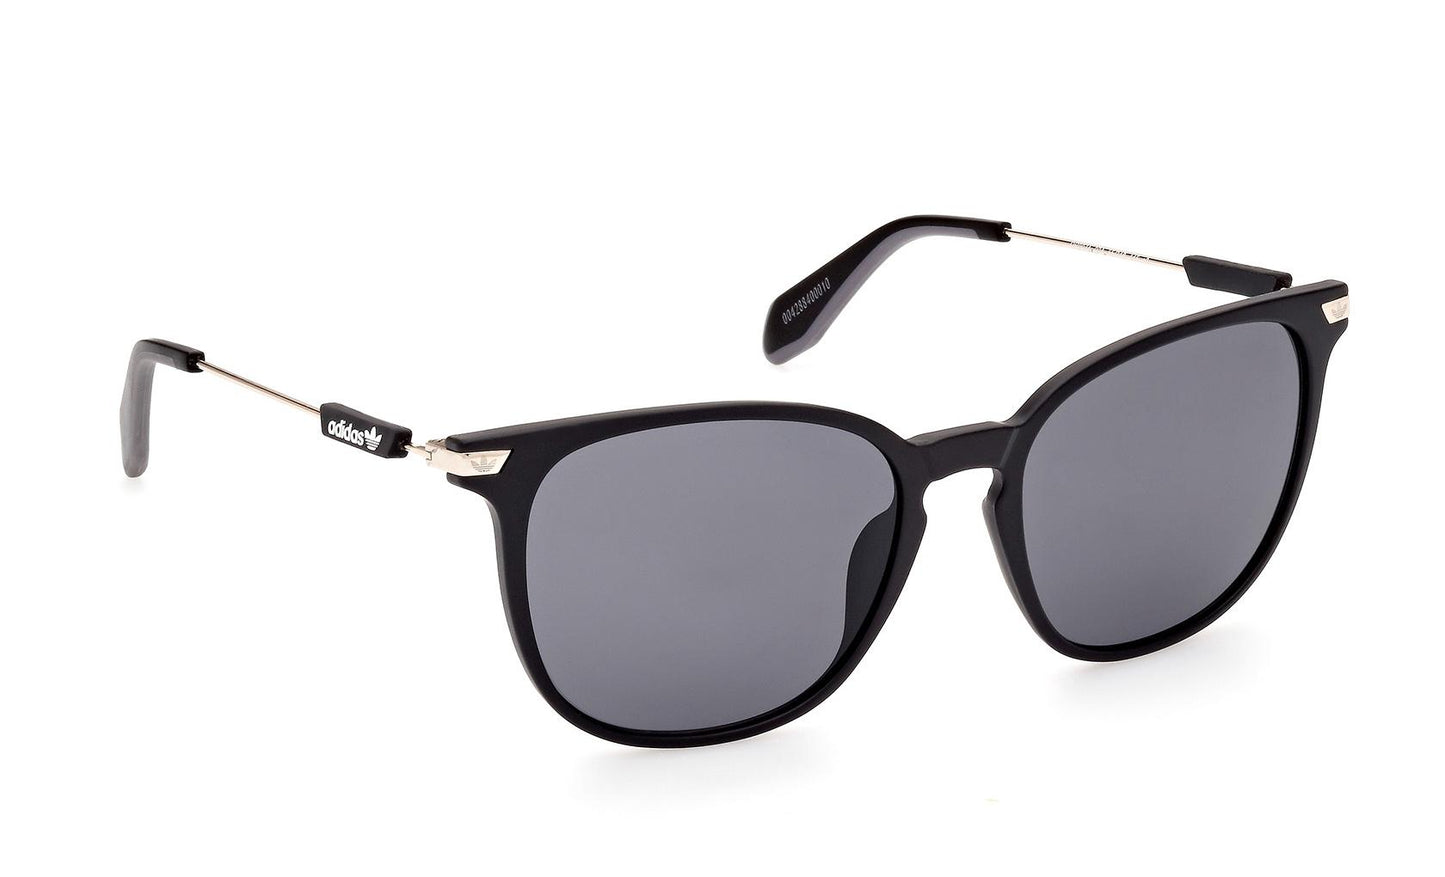 Adidas Originals Sunglasses OR0074 02A